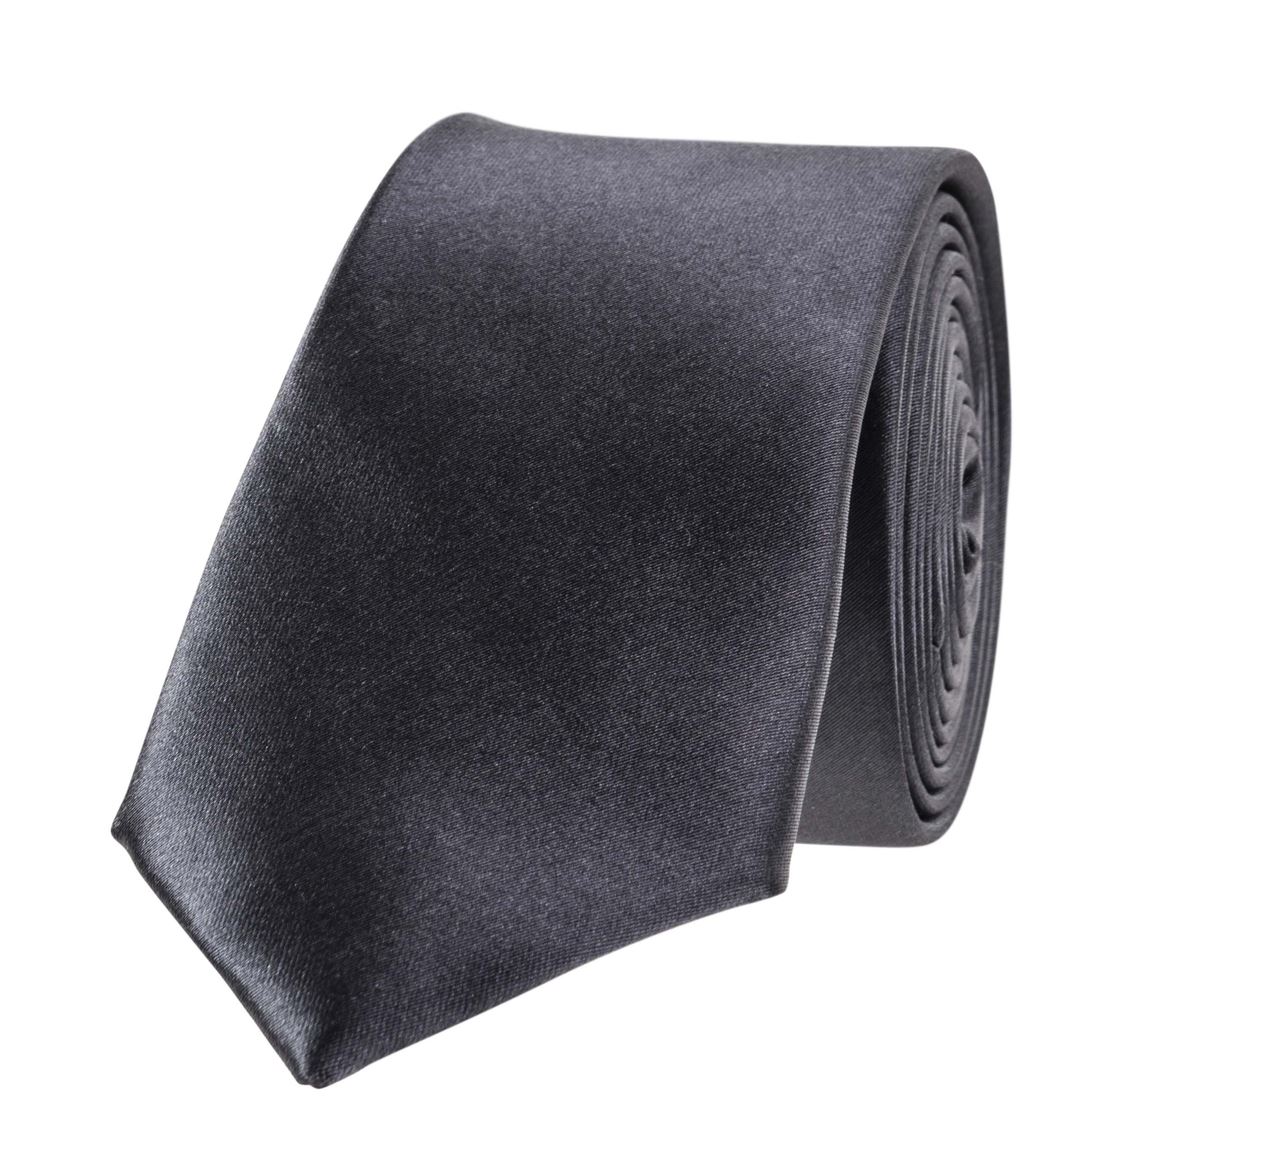 Cravate de service gris (vendu par 5) - Molinel - 2919999026